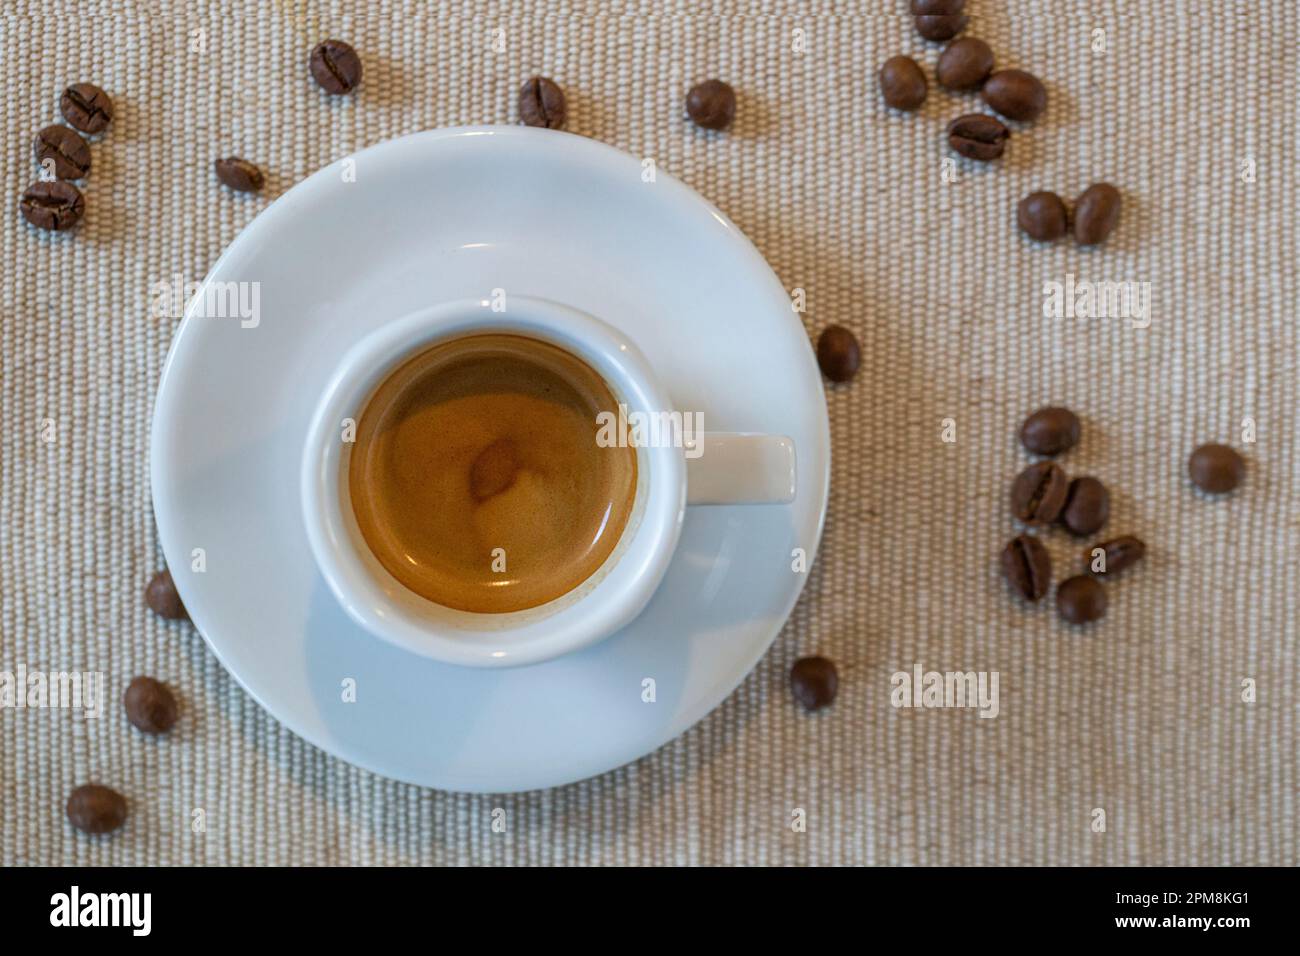 eine mit leckerem Espresso gefüllte Tasse von oben, auf einem Tischset Stock Photo